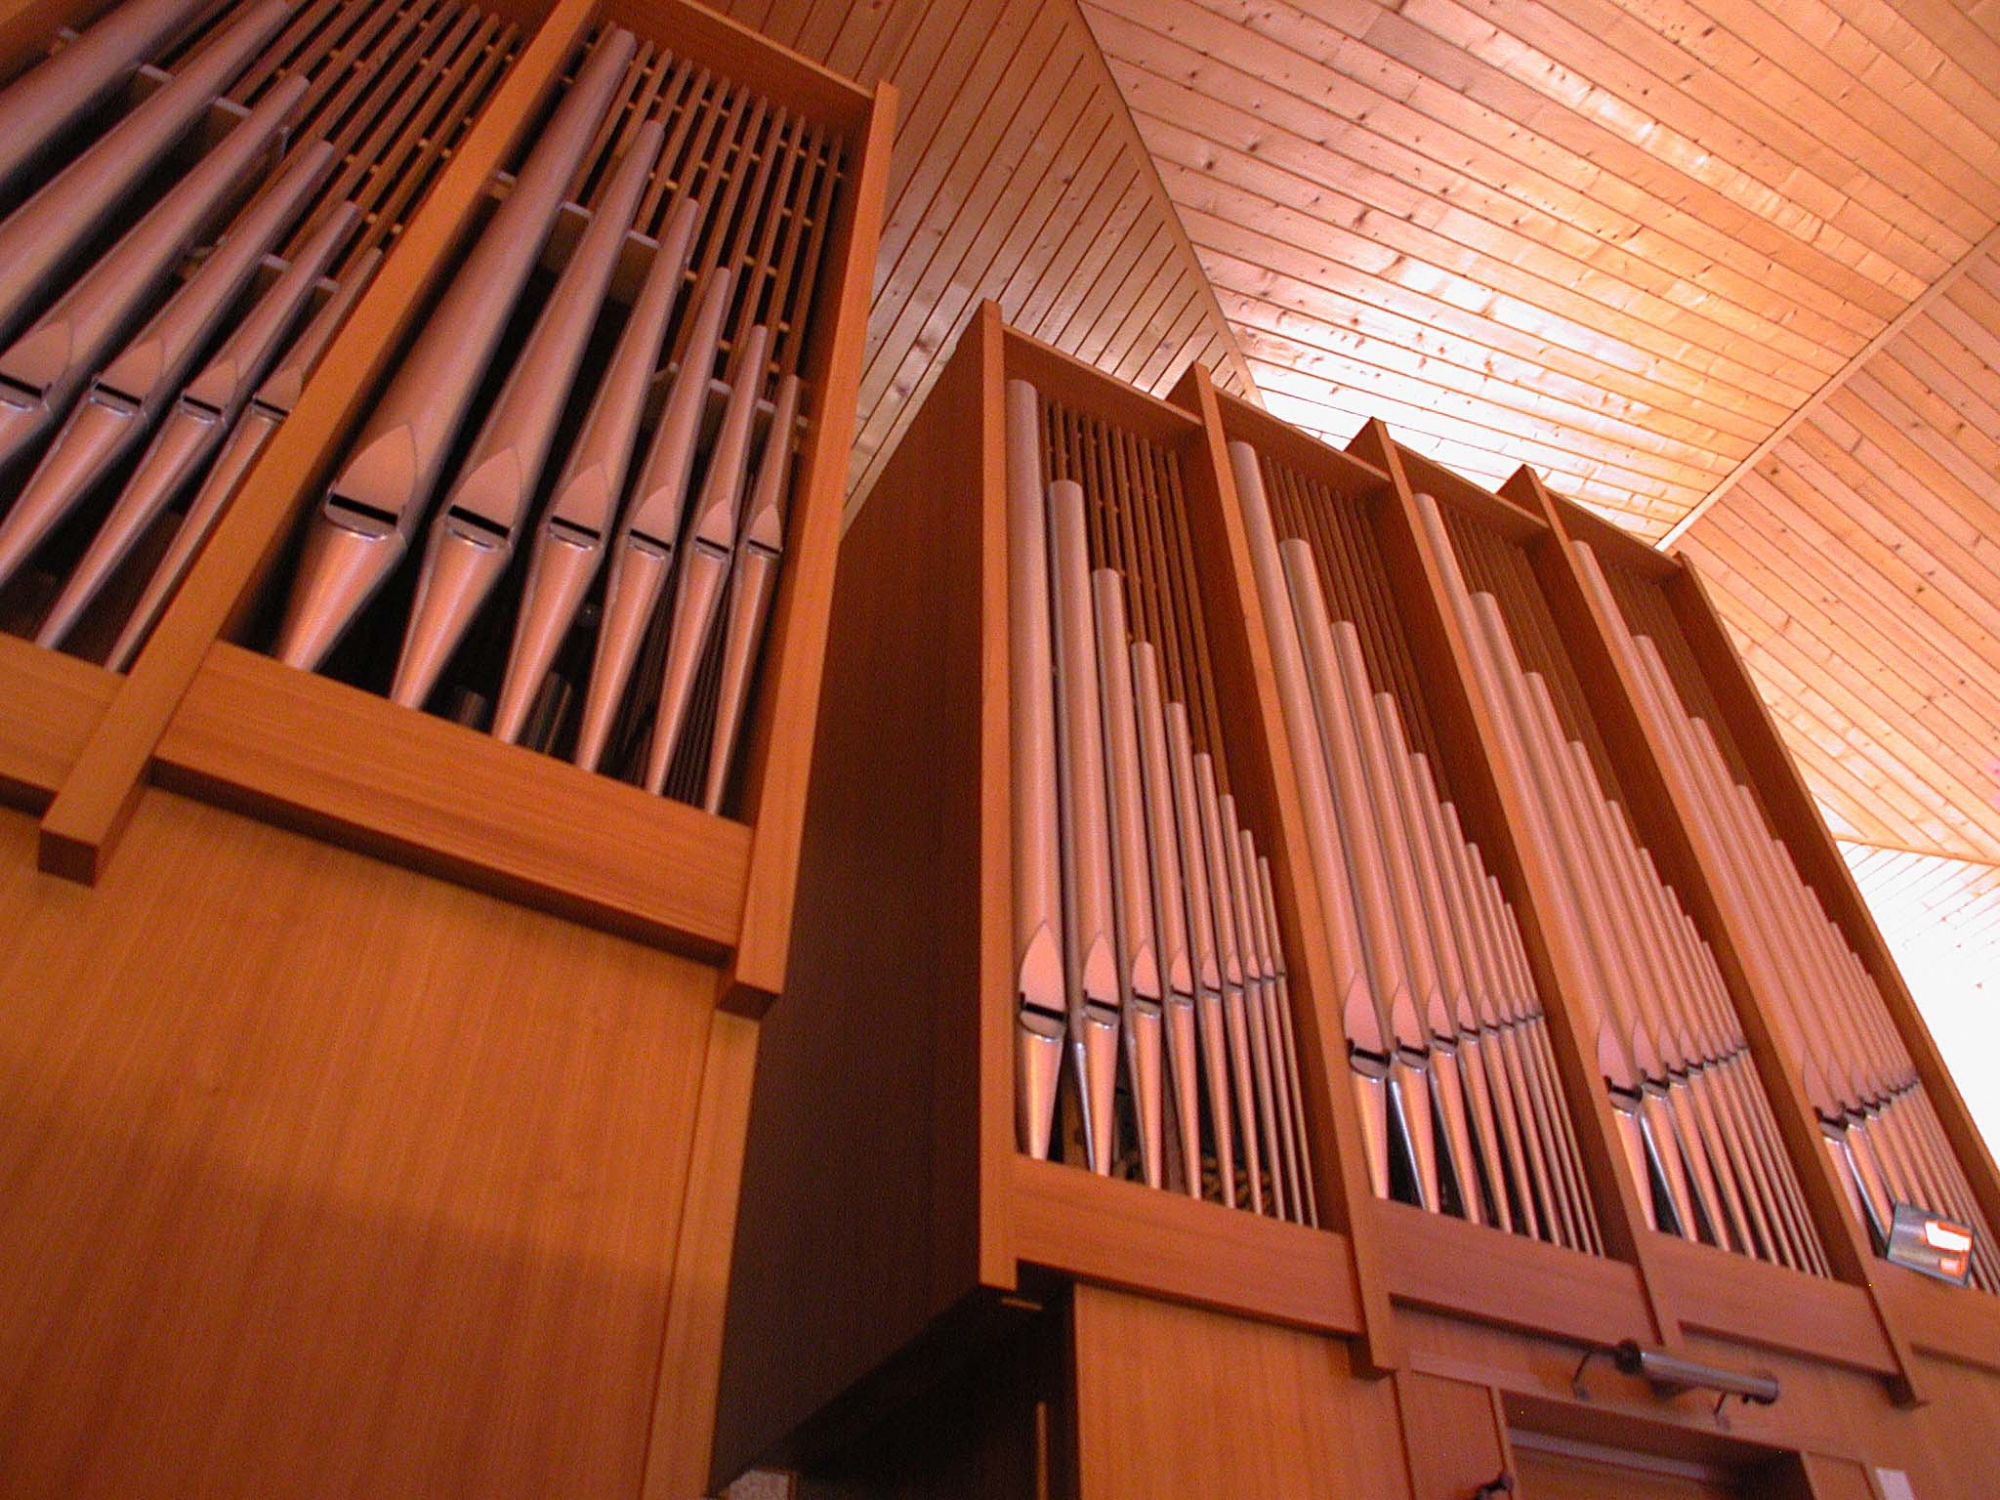 L'orgue a 50 ans, tout comme le temple qui l'abrite. Les travaux envisagés sont estimés à 500'000 francs.